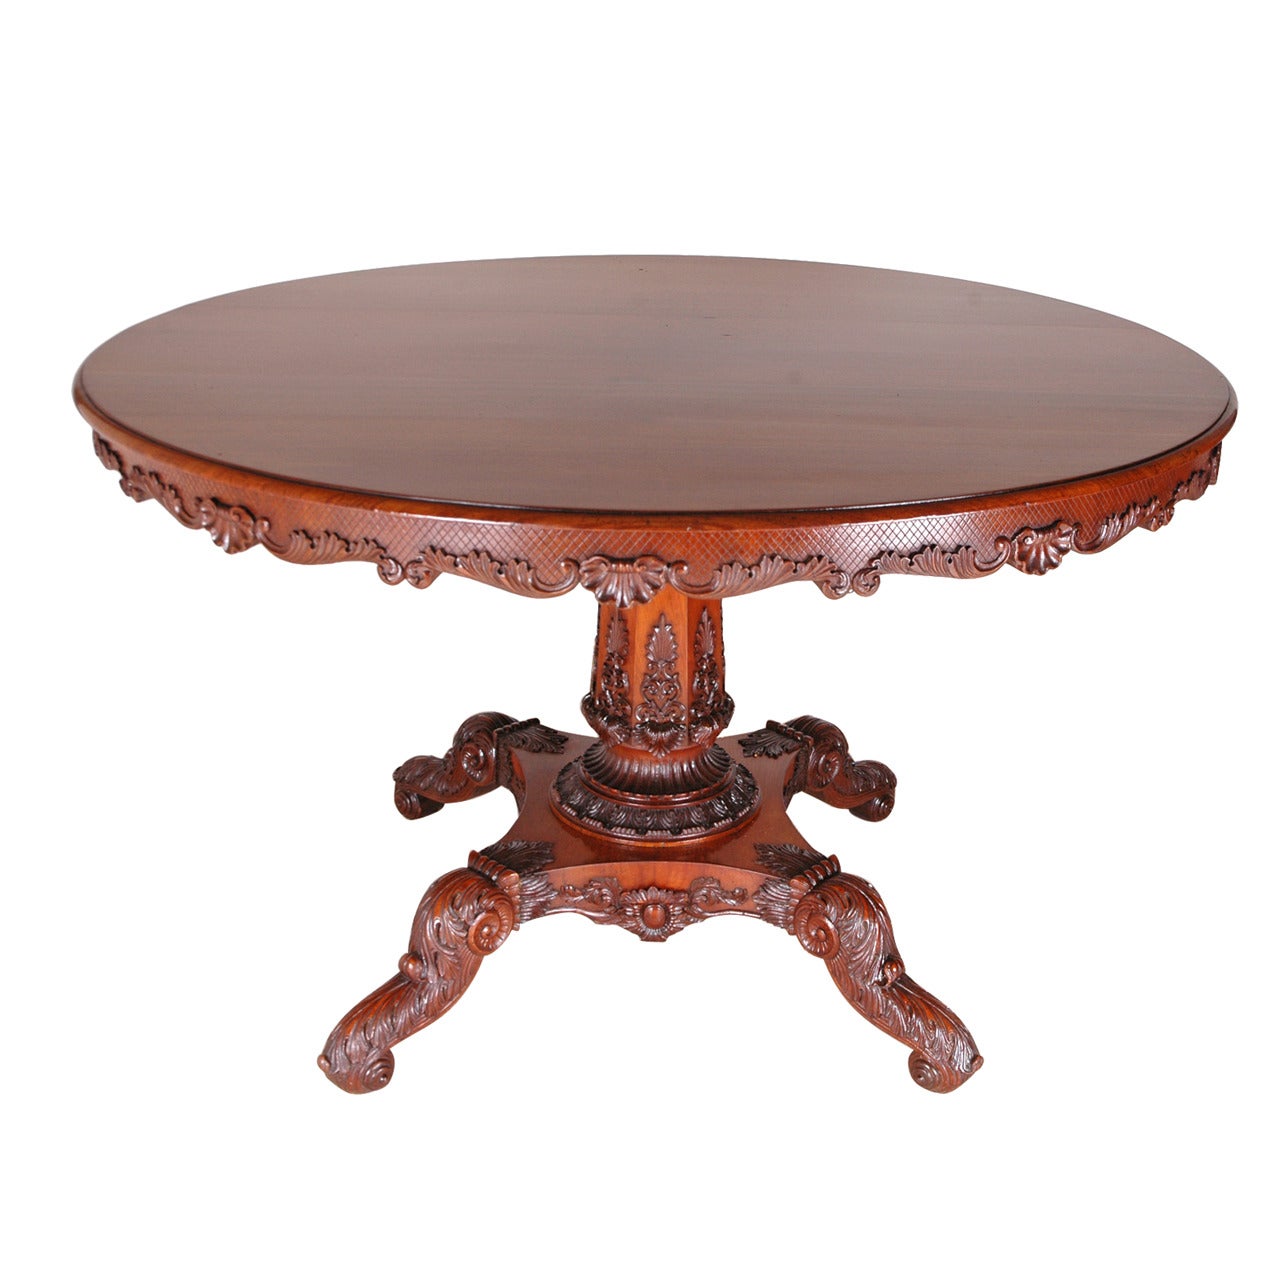  48" Round English Regency Dining Table in Mahogany with Carved Center Pedestal (table à manger ronde de style Régence anglaise en acajou avec piédestal central sculpté) en vente